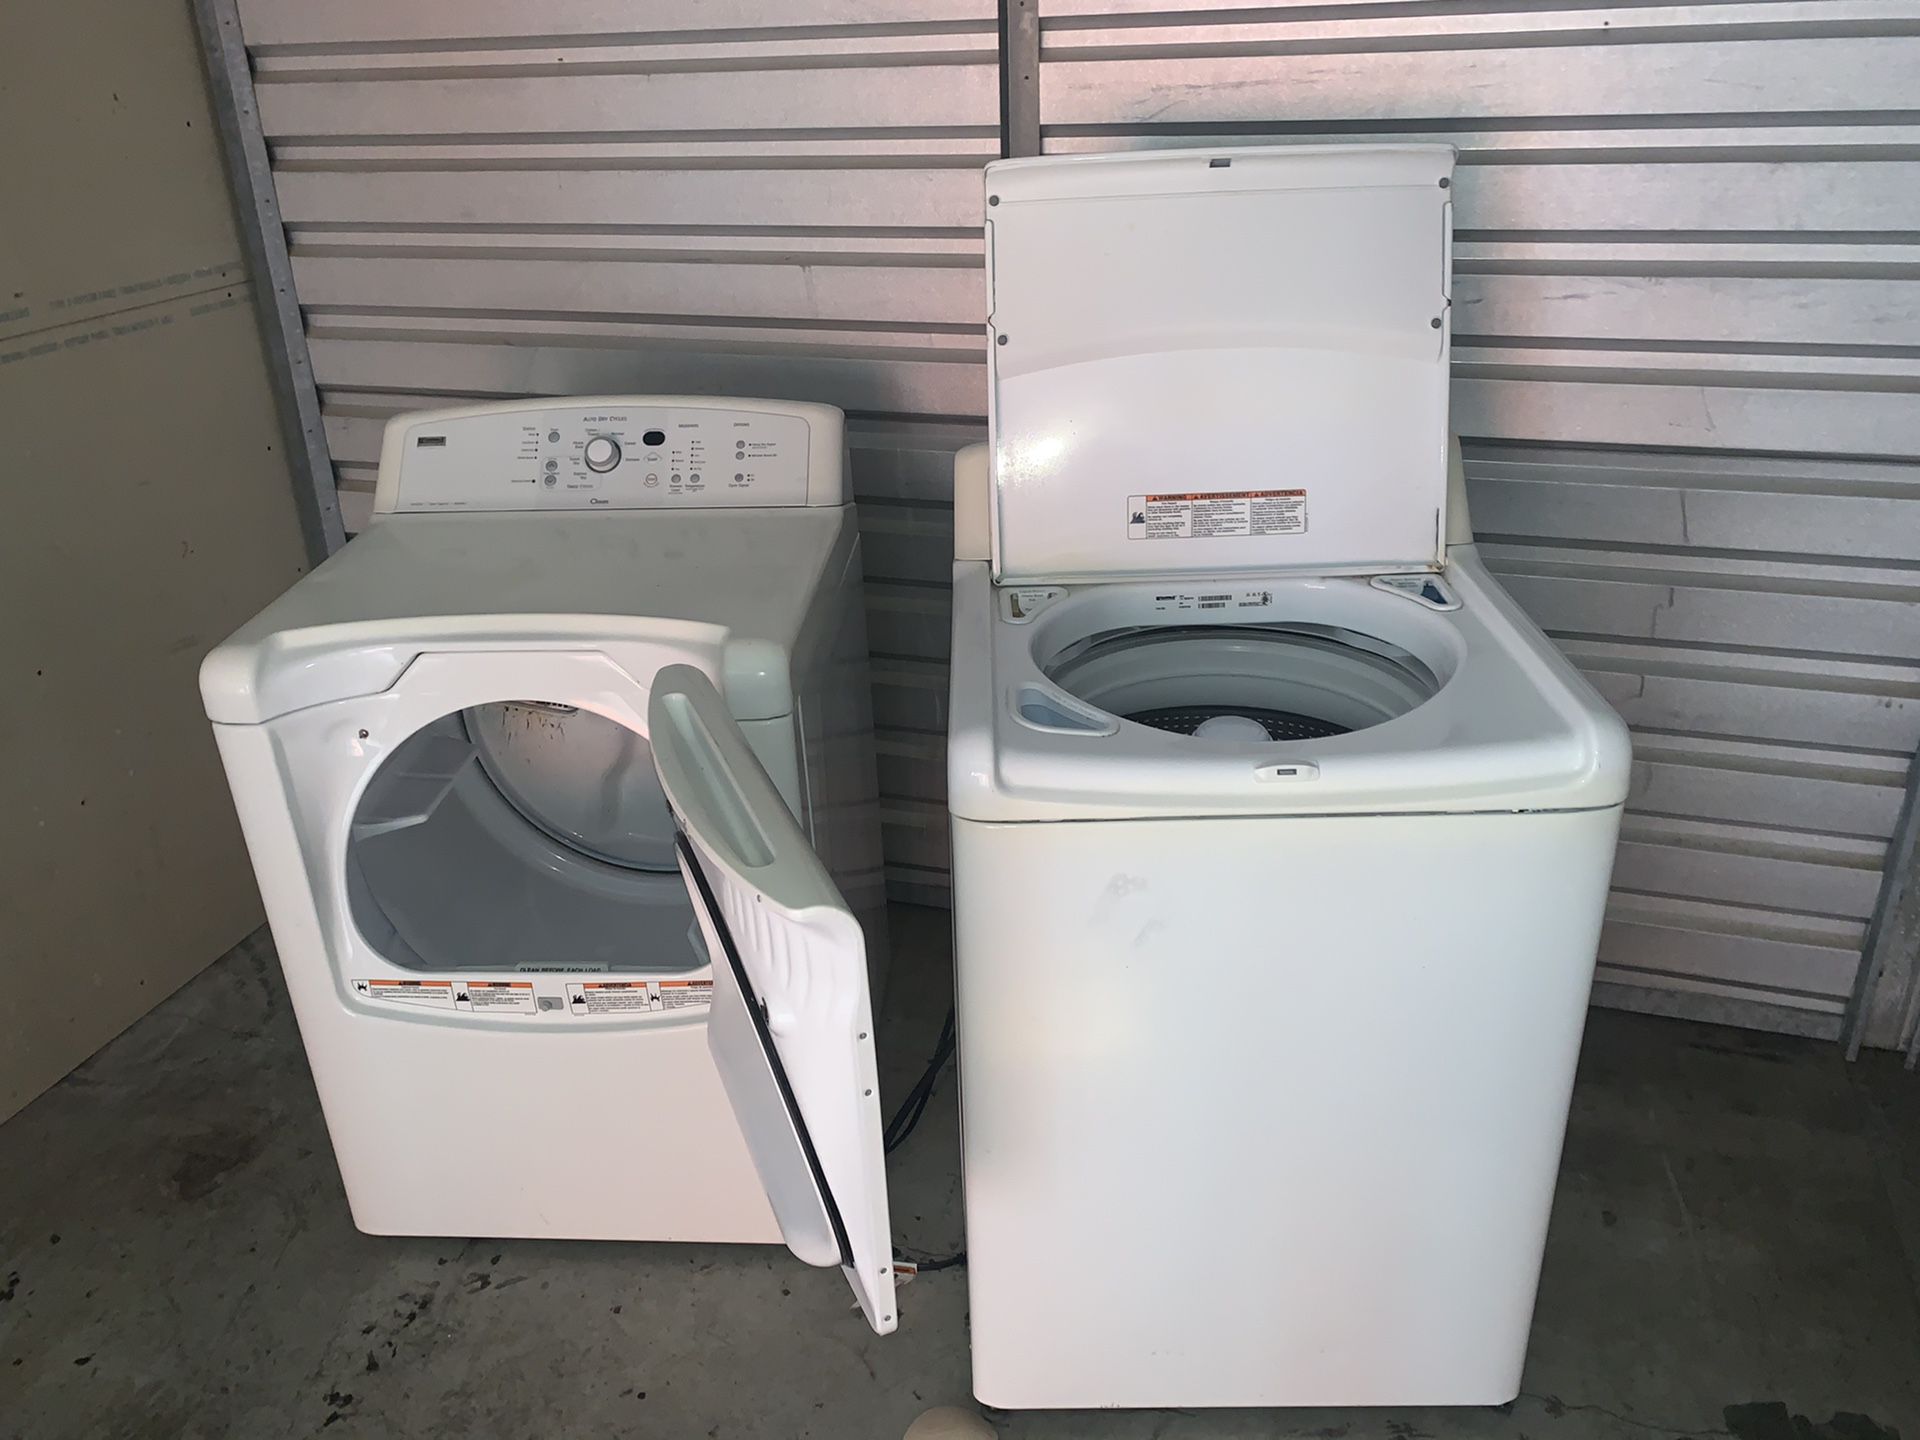 Kensmore Elite Washer and Dryer set for sale